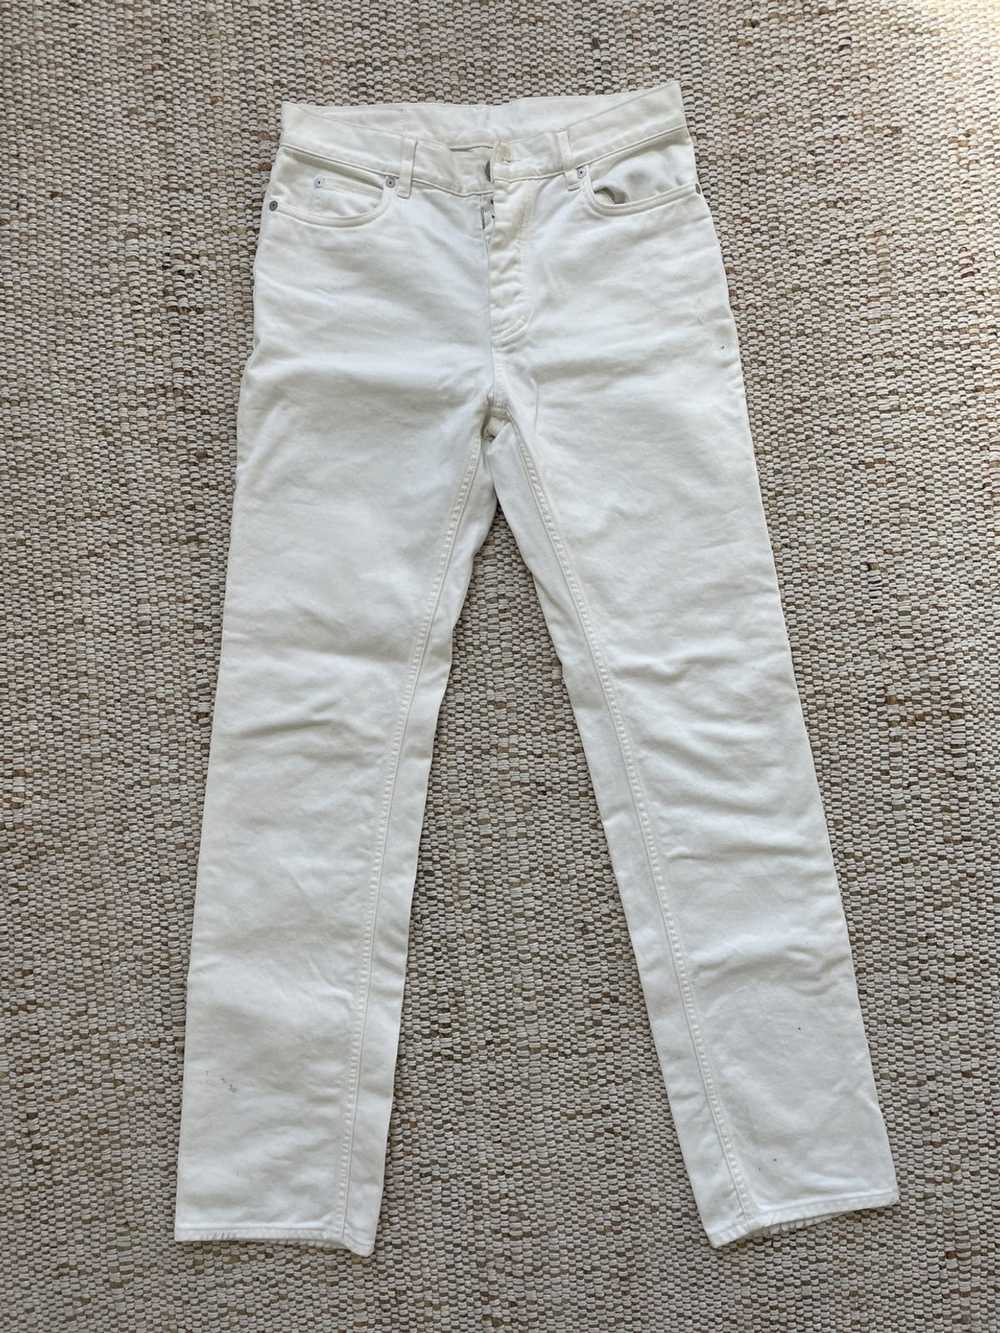 Maison Margiela Margiela white jeans - image 2